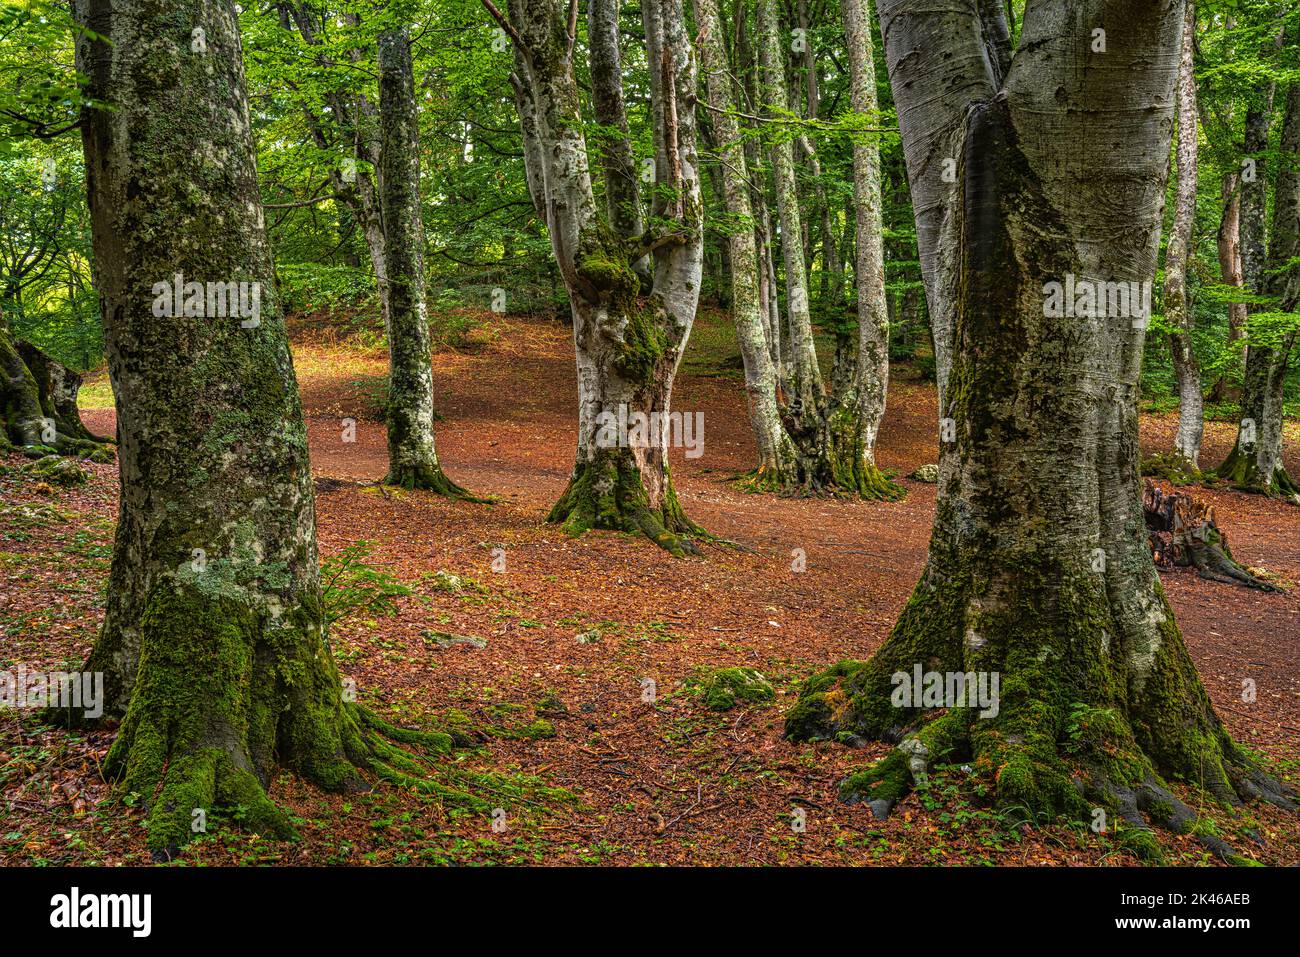 Bosque de haya con hojas verdes en las ramas y troncos musgosos. En el suelo una alfombra de fogle marrón caído. Bosco di Sant'Antonio, Abruzos Foto de stock